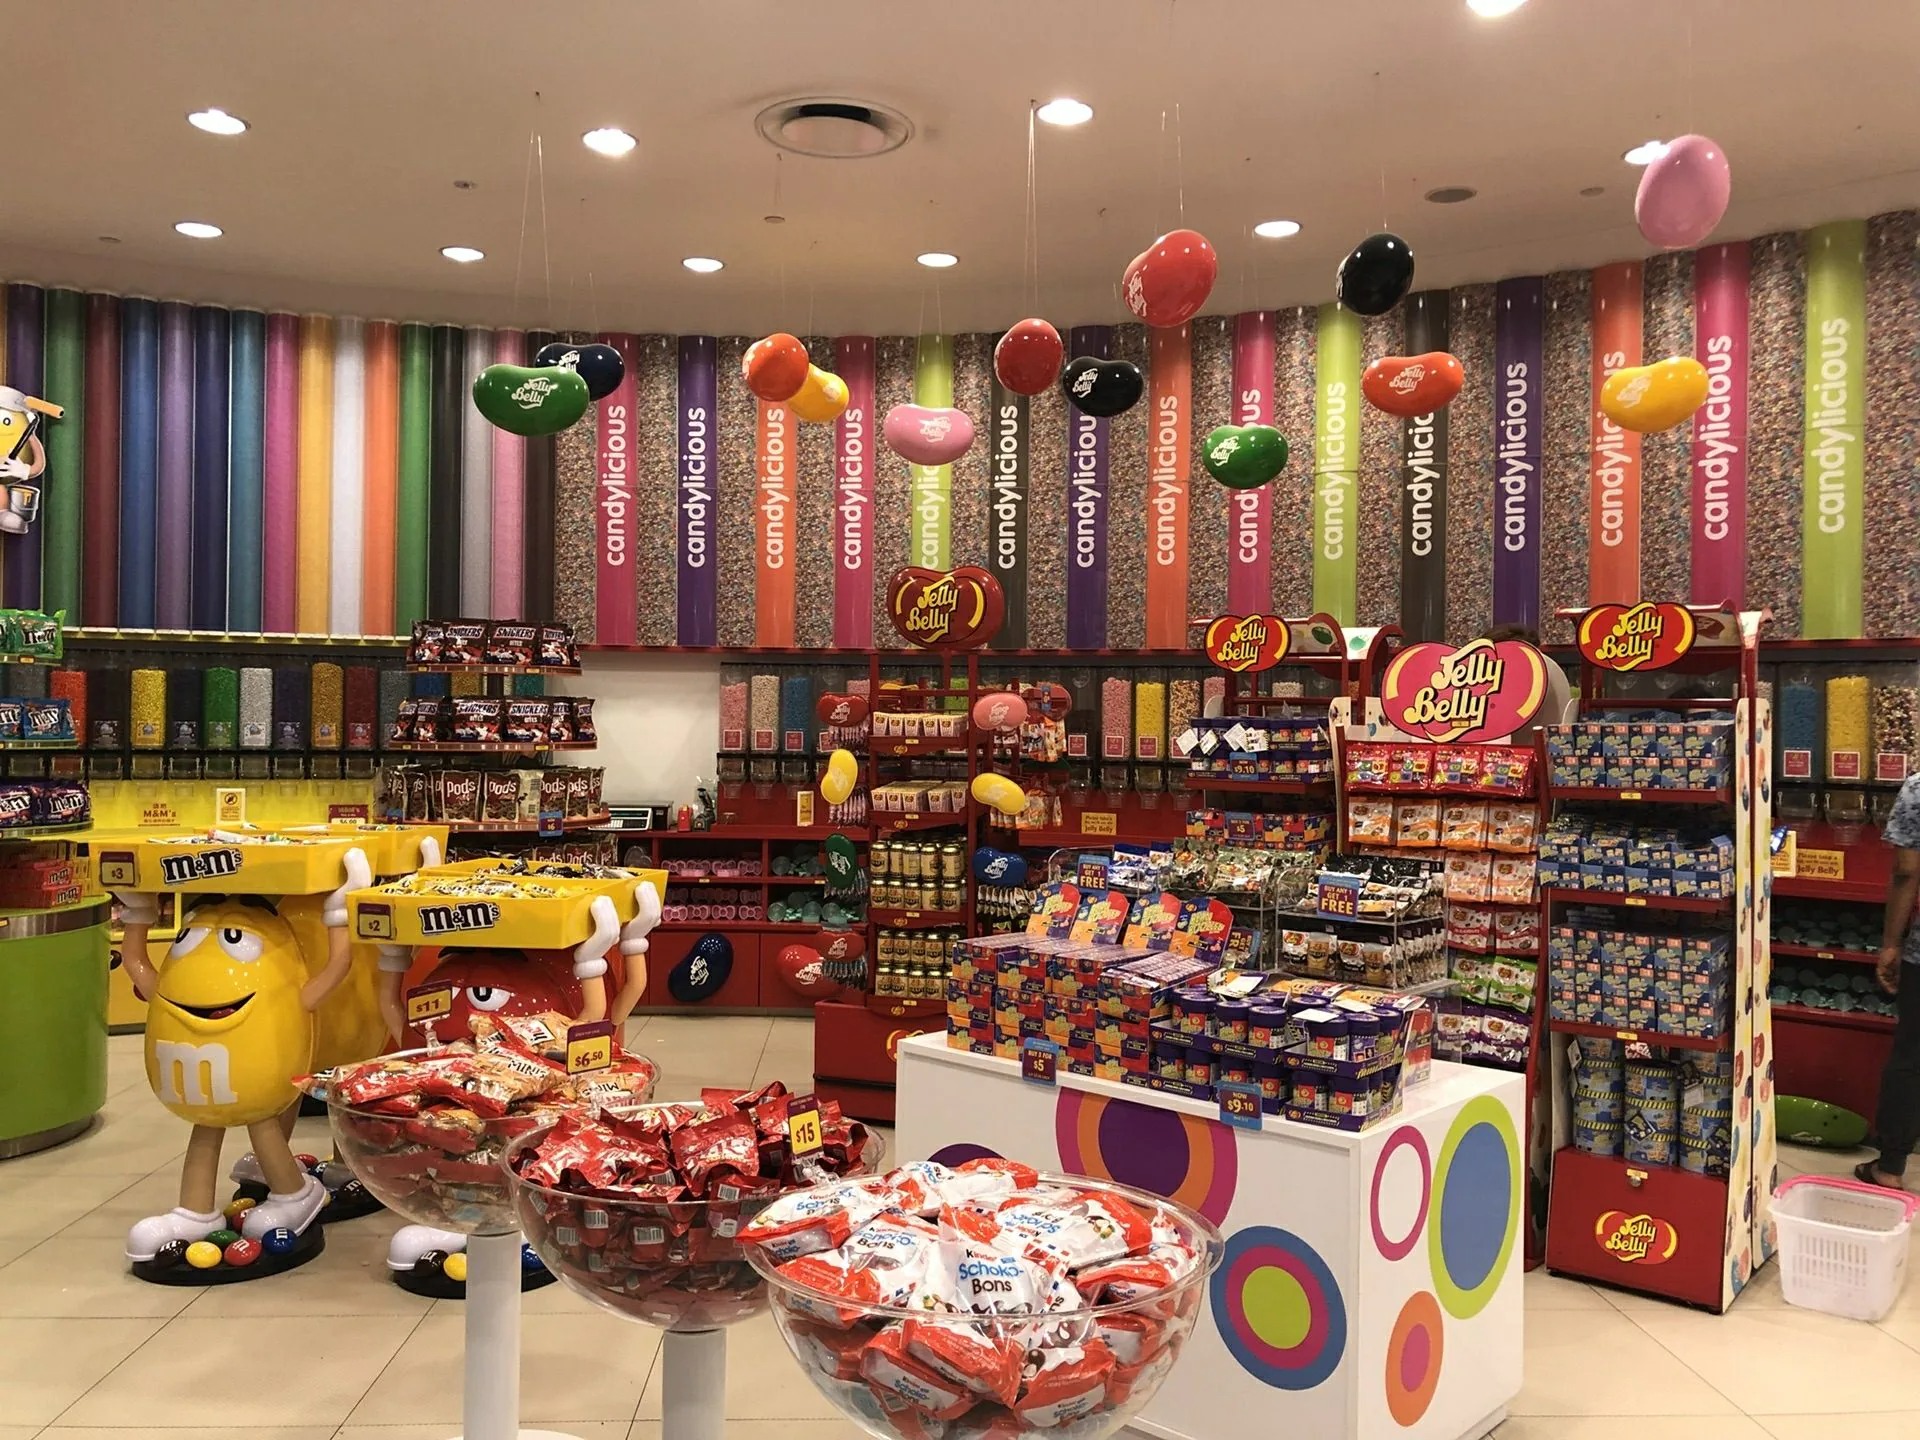 Cửa hàng kẹo Candylicious. Ảnh: juki235.